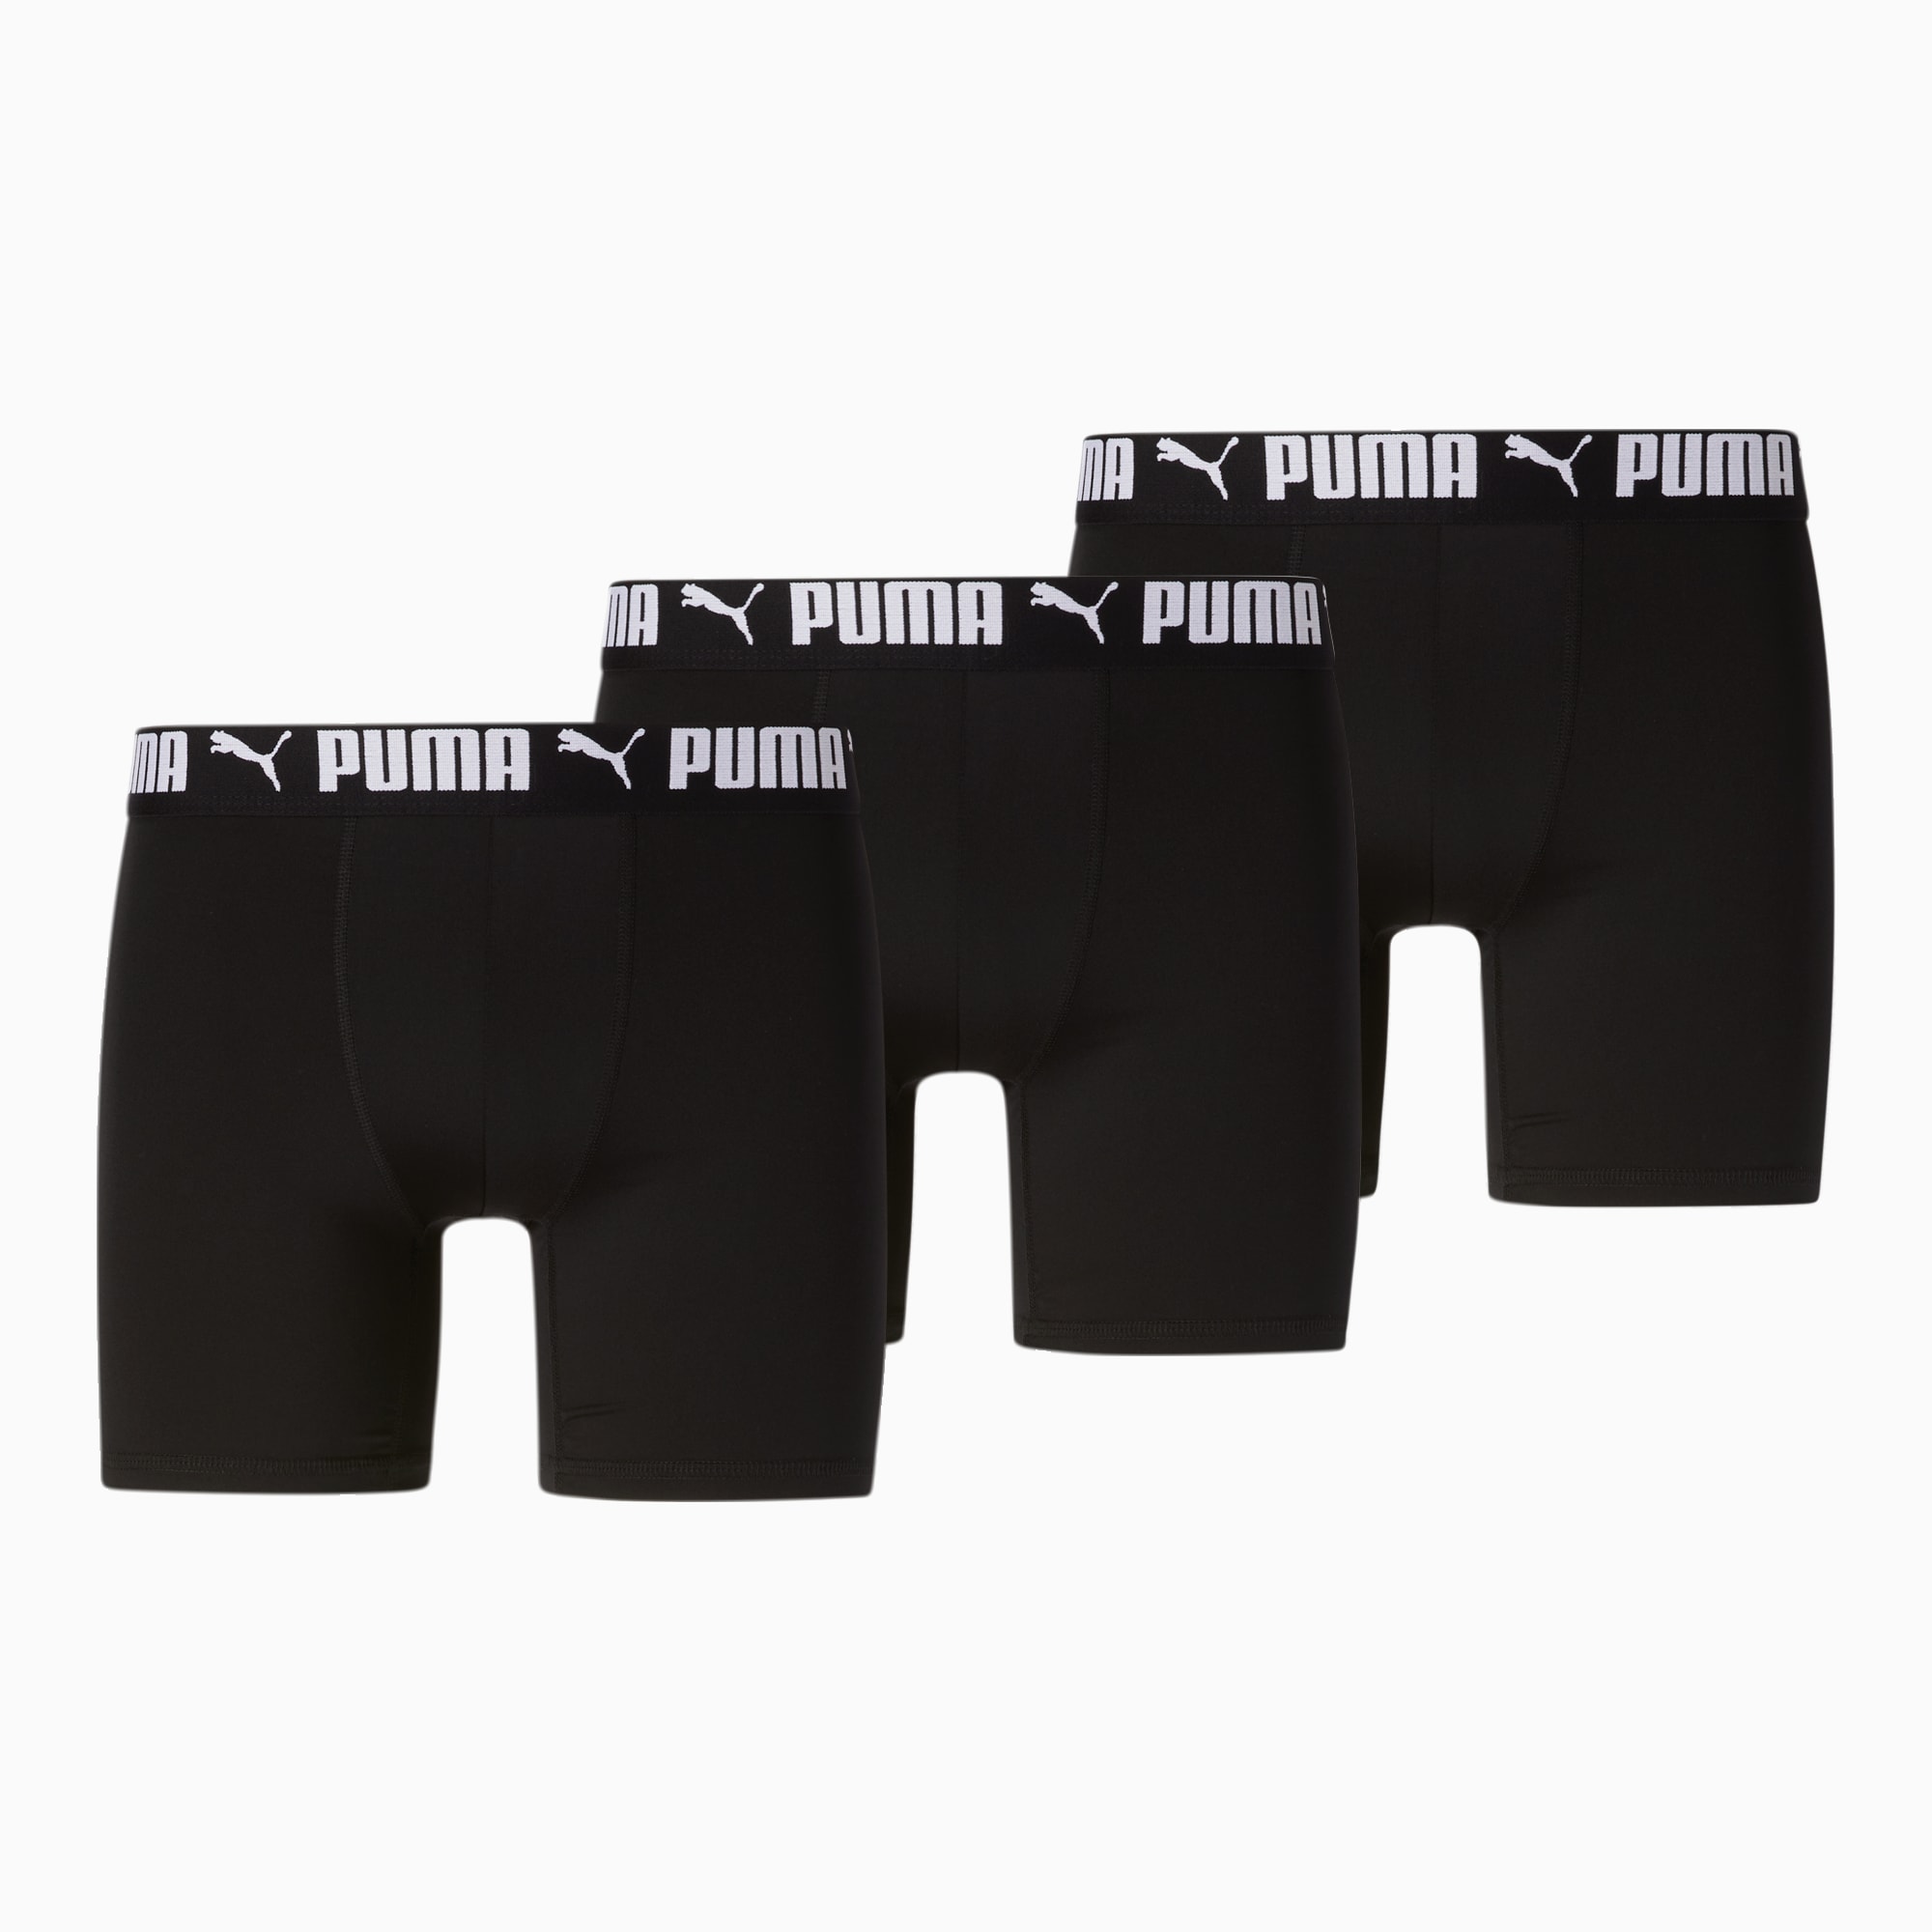 Puma Men's Mesh Boxer Brief, 3-pack - Costco Deals Online